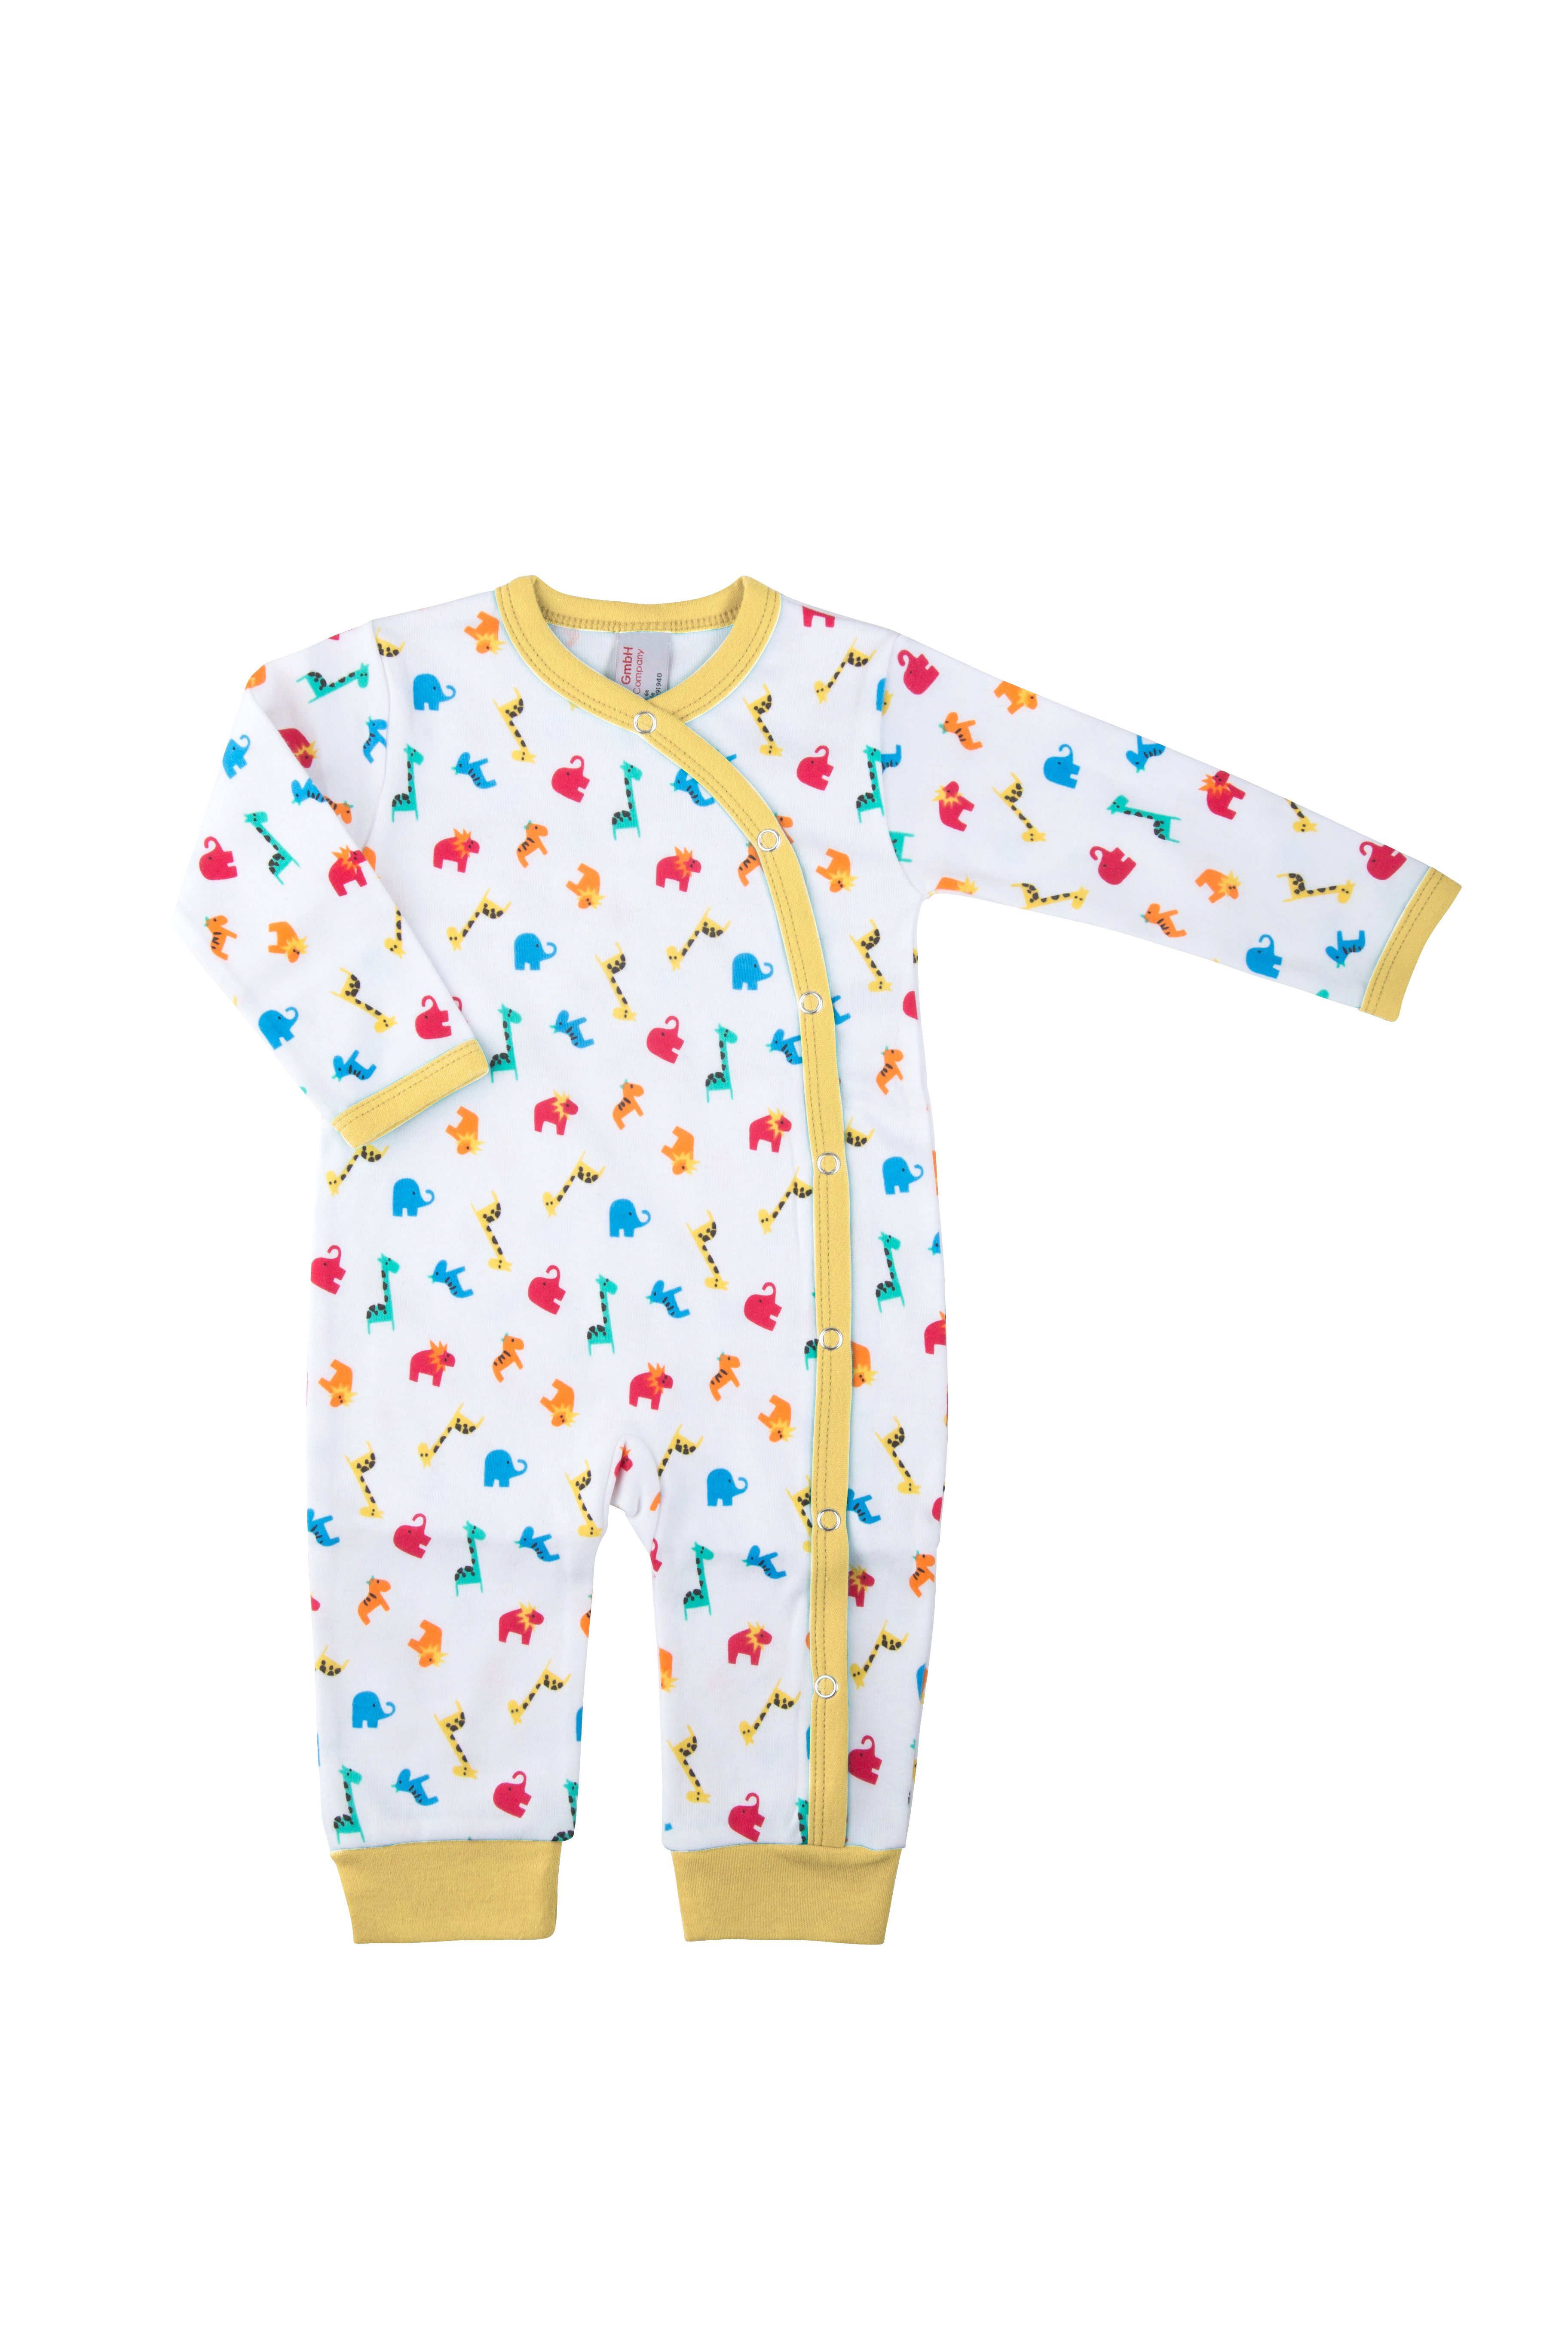 Clinotest Schlafoverall Baby Schlafanzug aus Jersey, Zootiere, Druckknöpfe Gelb